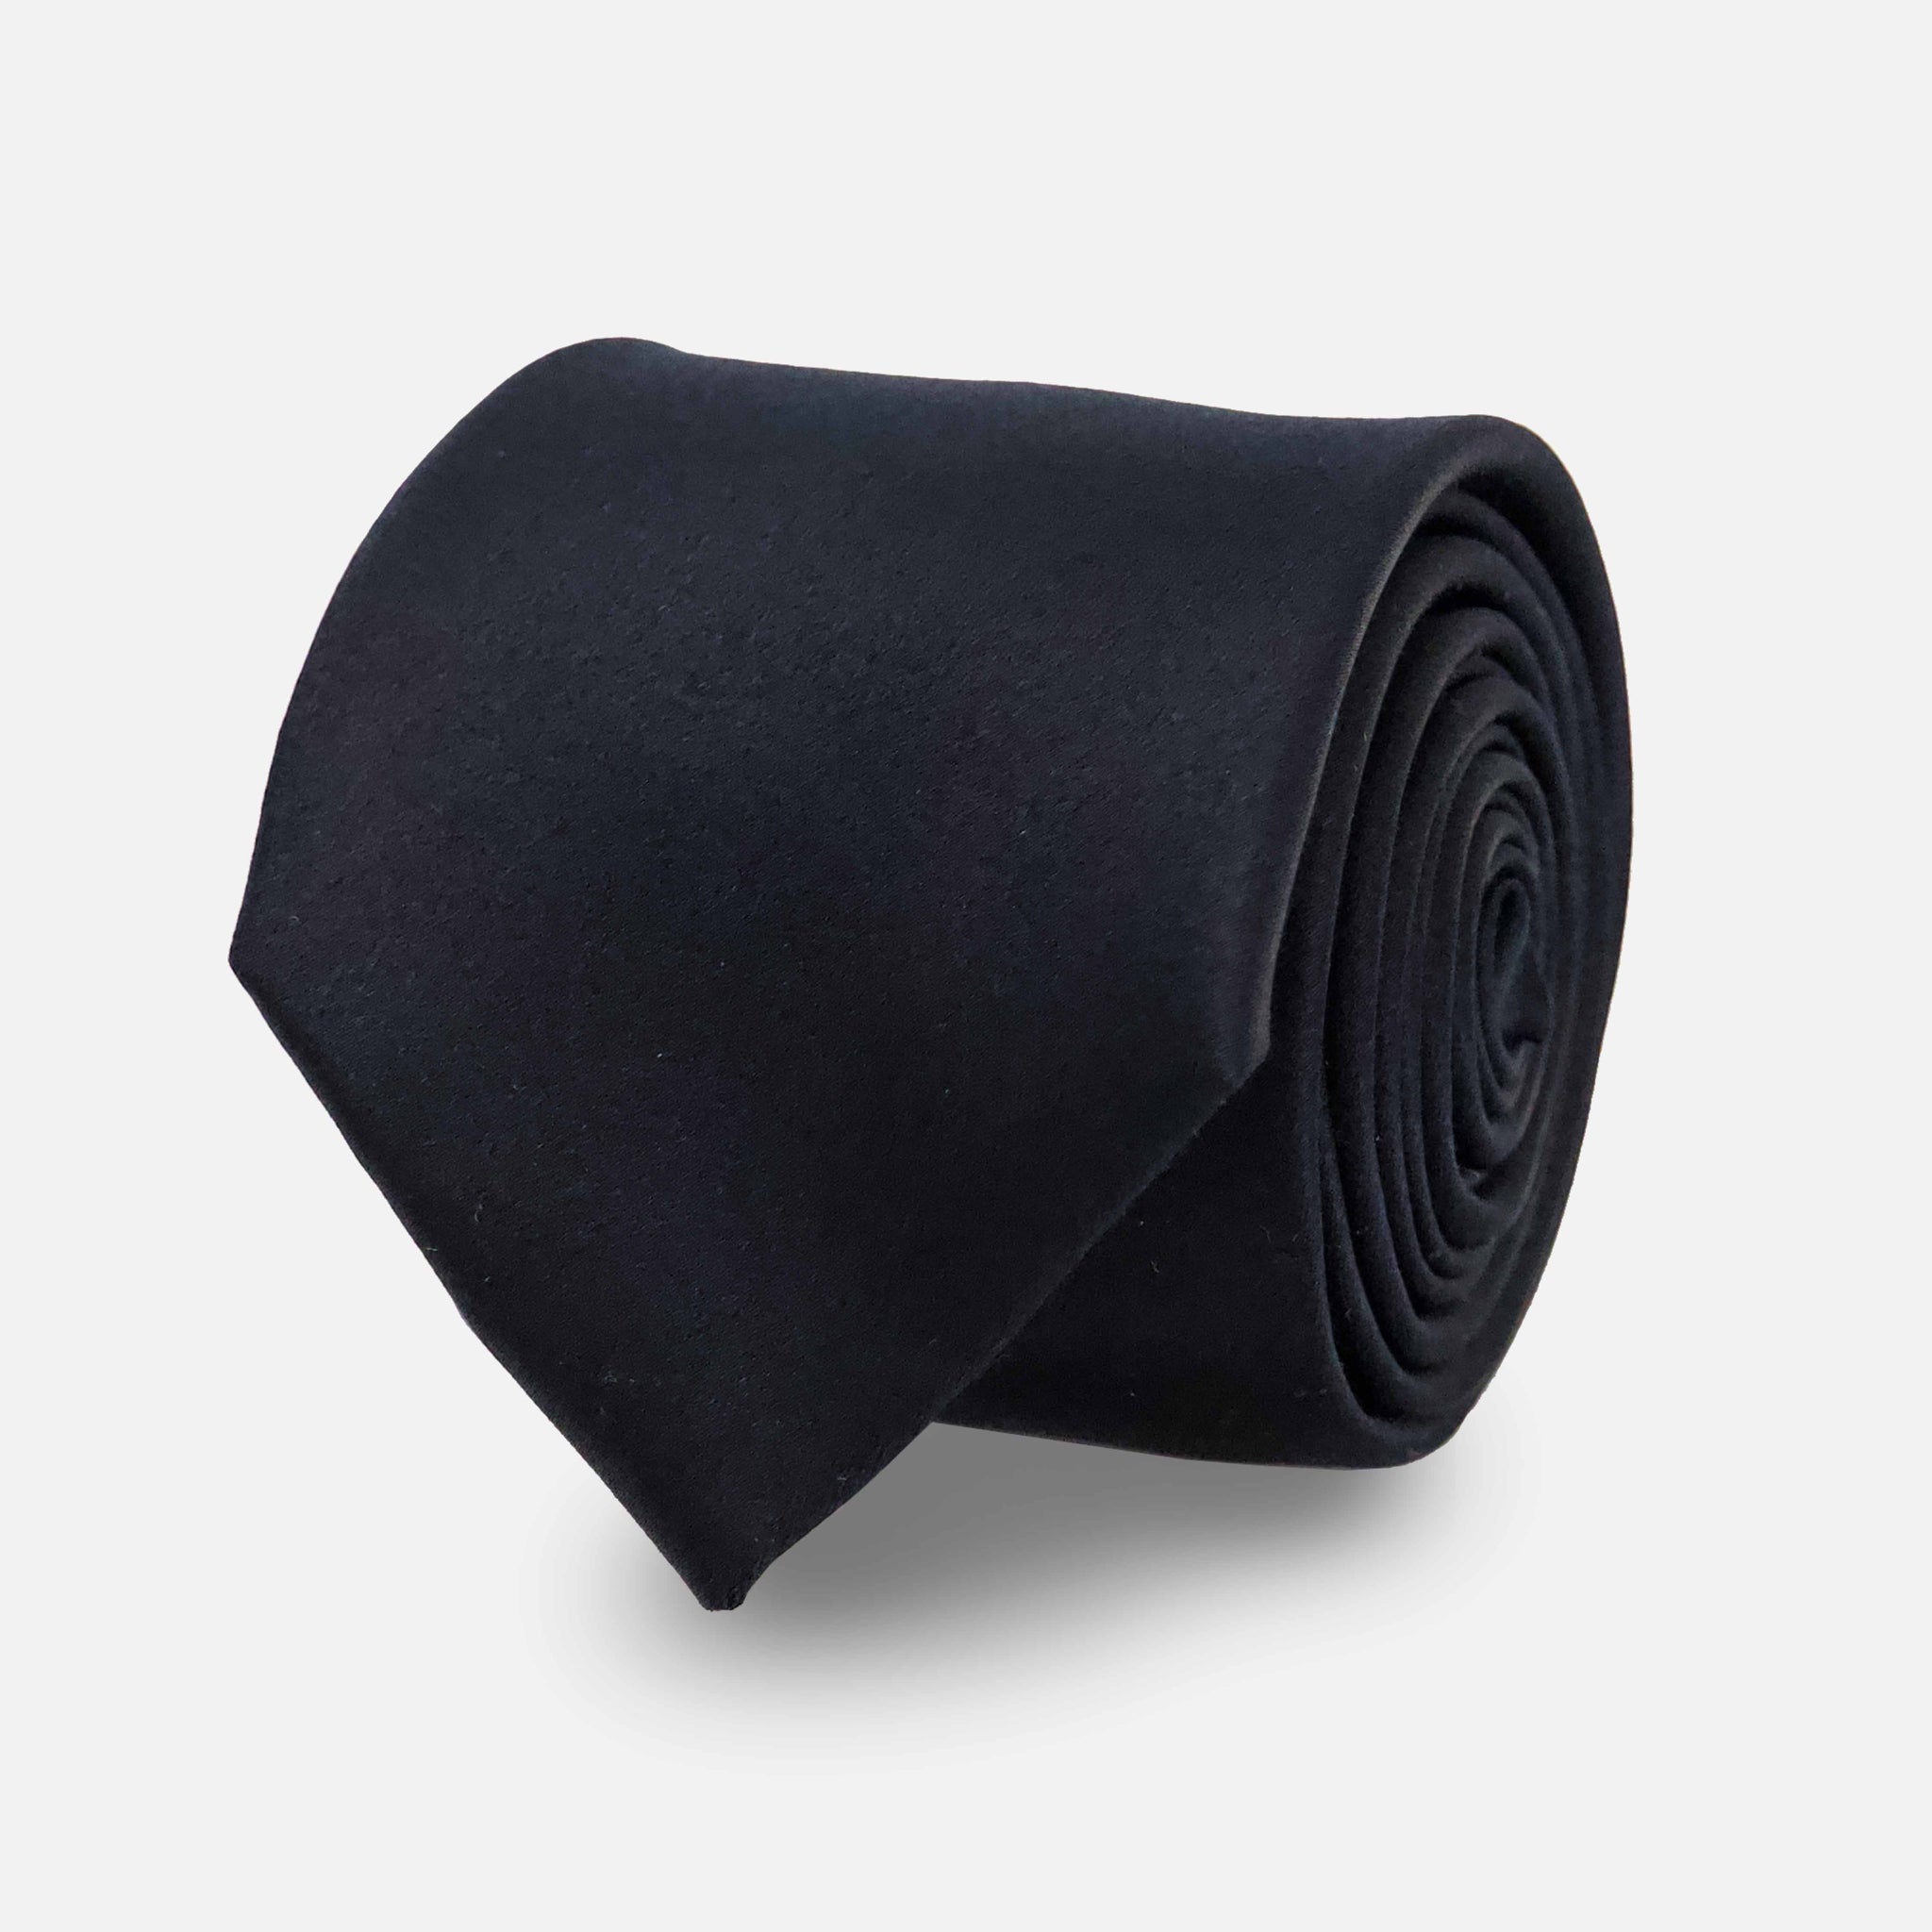 Solid Satin Black Tie by Tie Bar